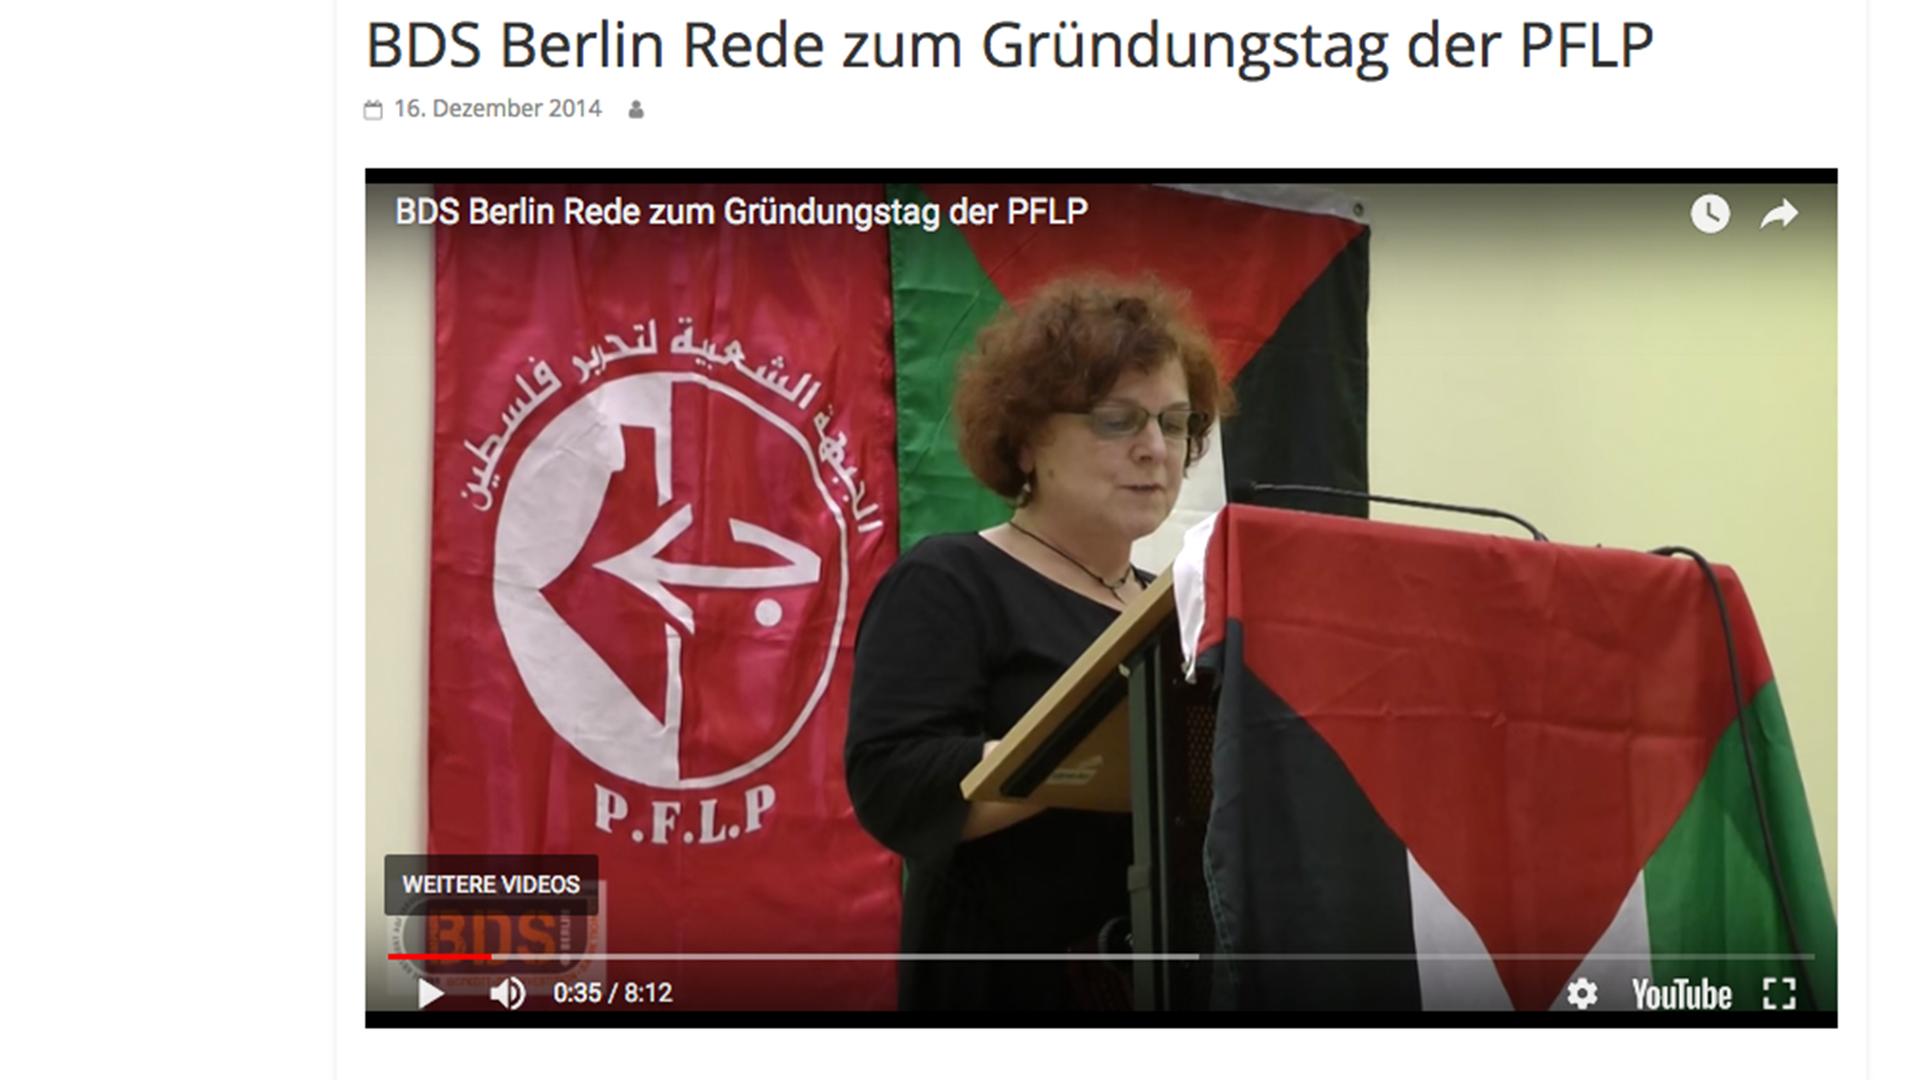 BDS bei der PFLP | http://publicsolidarity.de/2014/